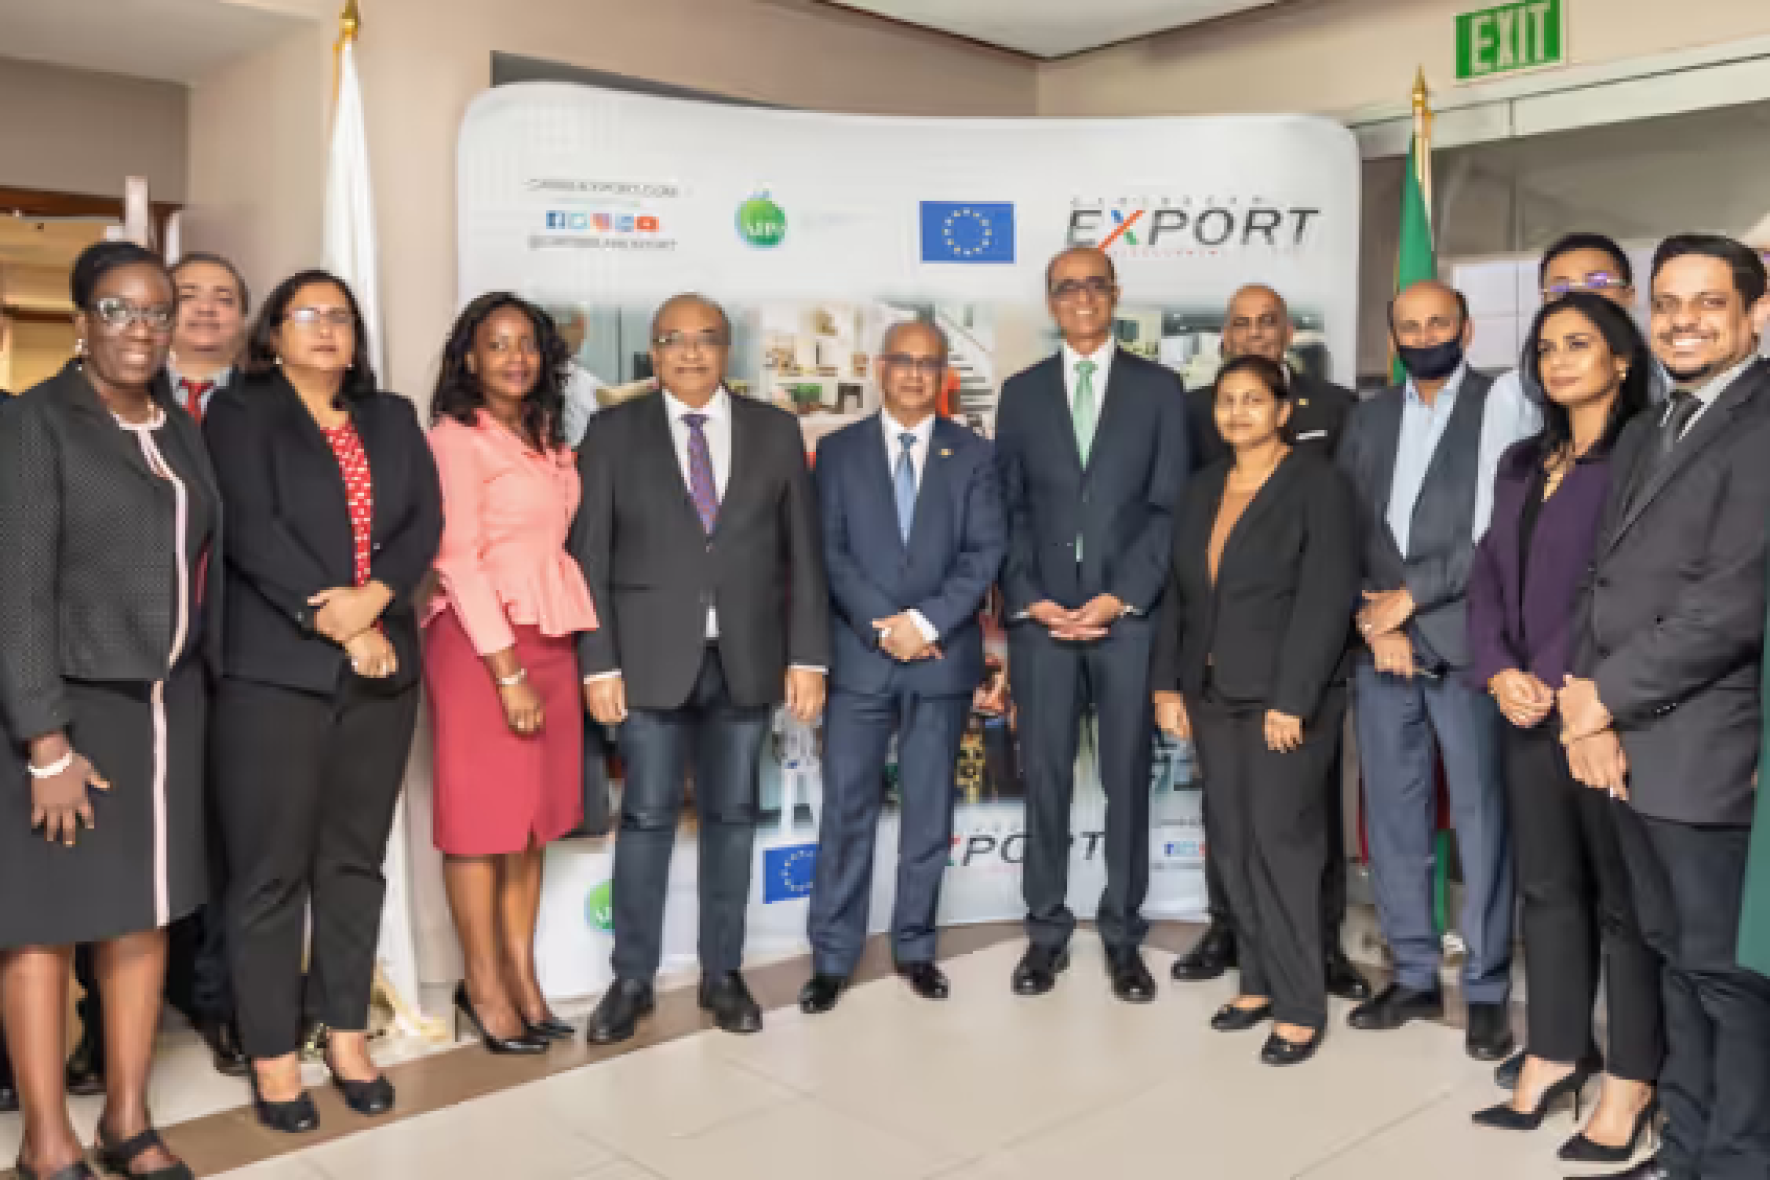 Caribische export en Suriname brengen nieuwe weg in kaart